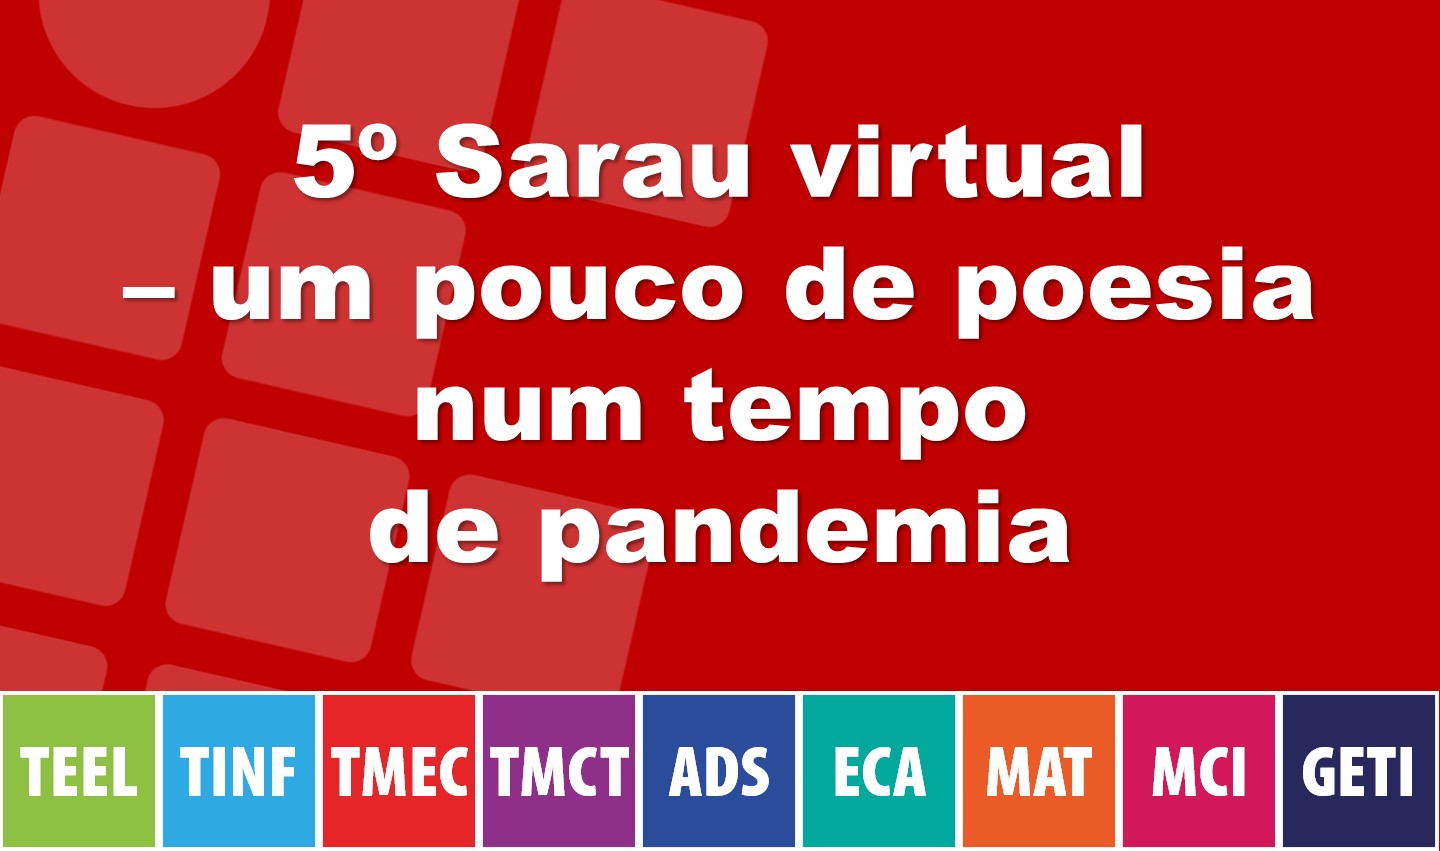 5º Sarau virtual - um pouco de poesia num tempo de pandemia